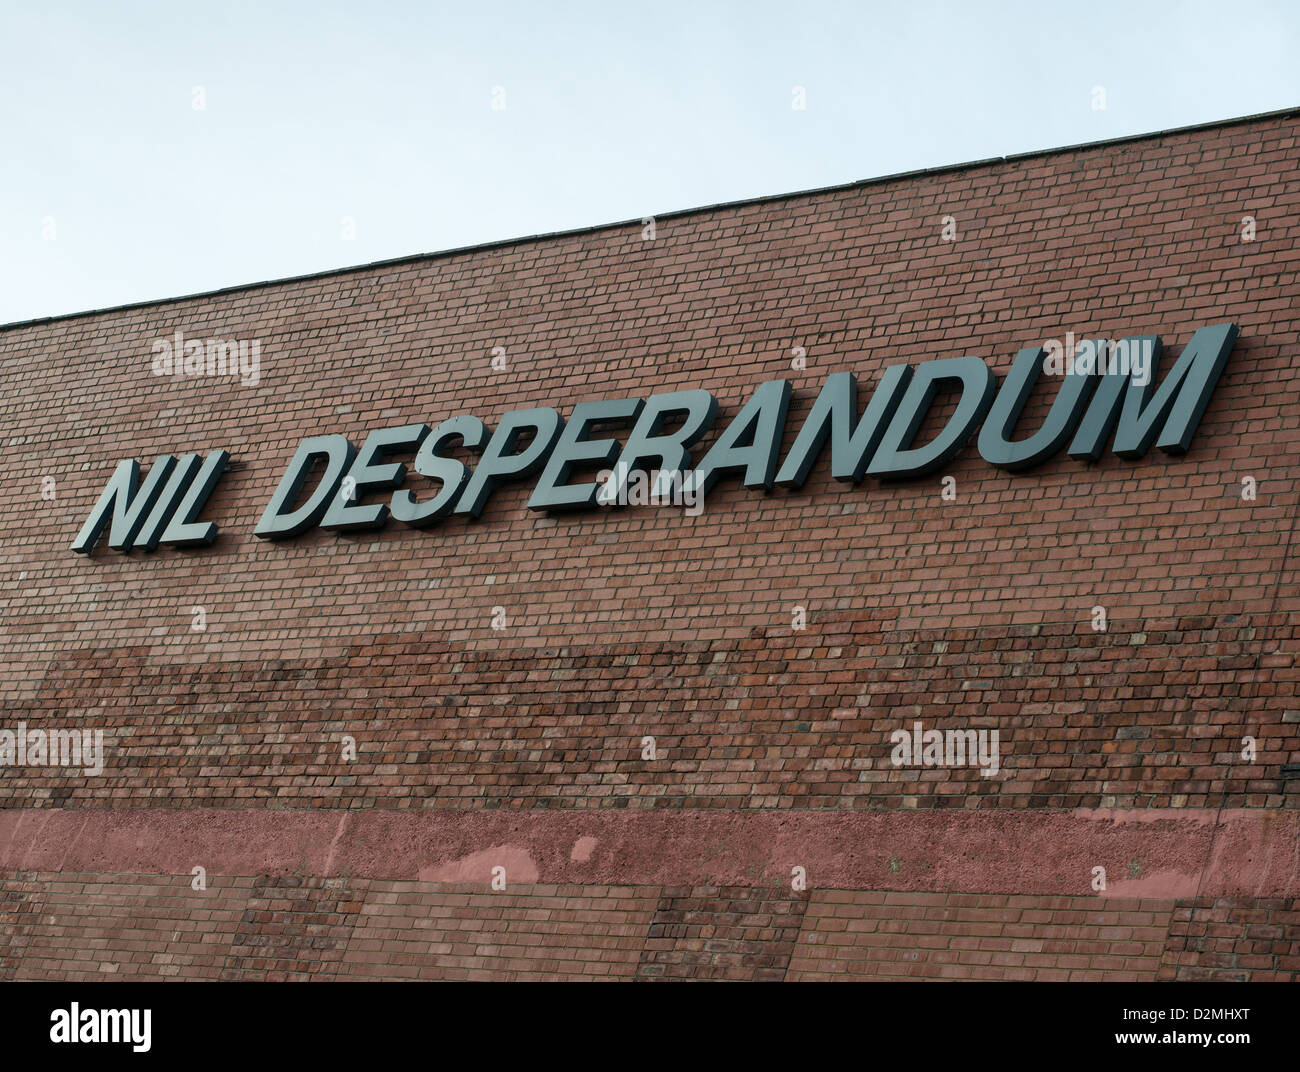 Nil Desperandum auf der Seite eines Ziegelgebäude Sunderland erscheint, North East England Großbritannien Stockfoto